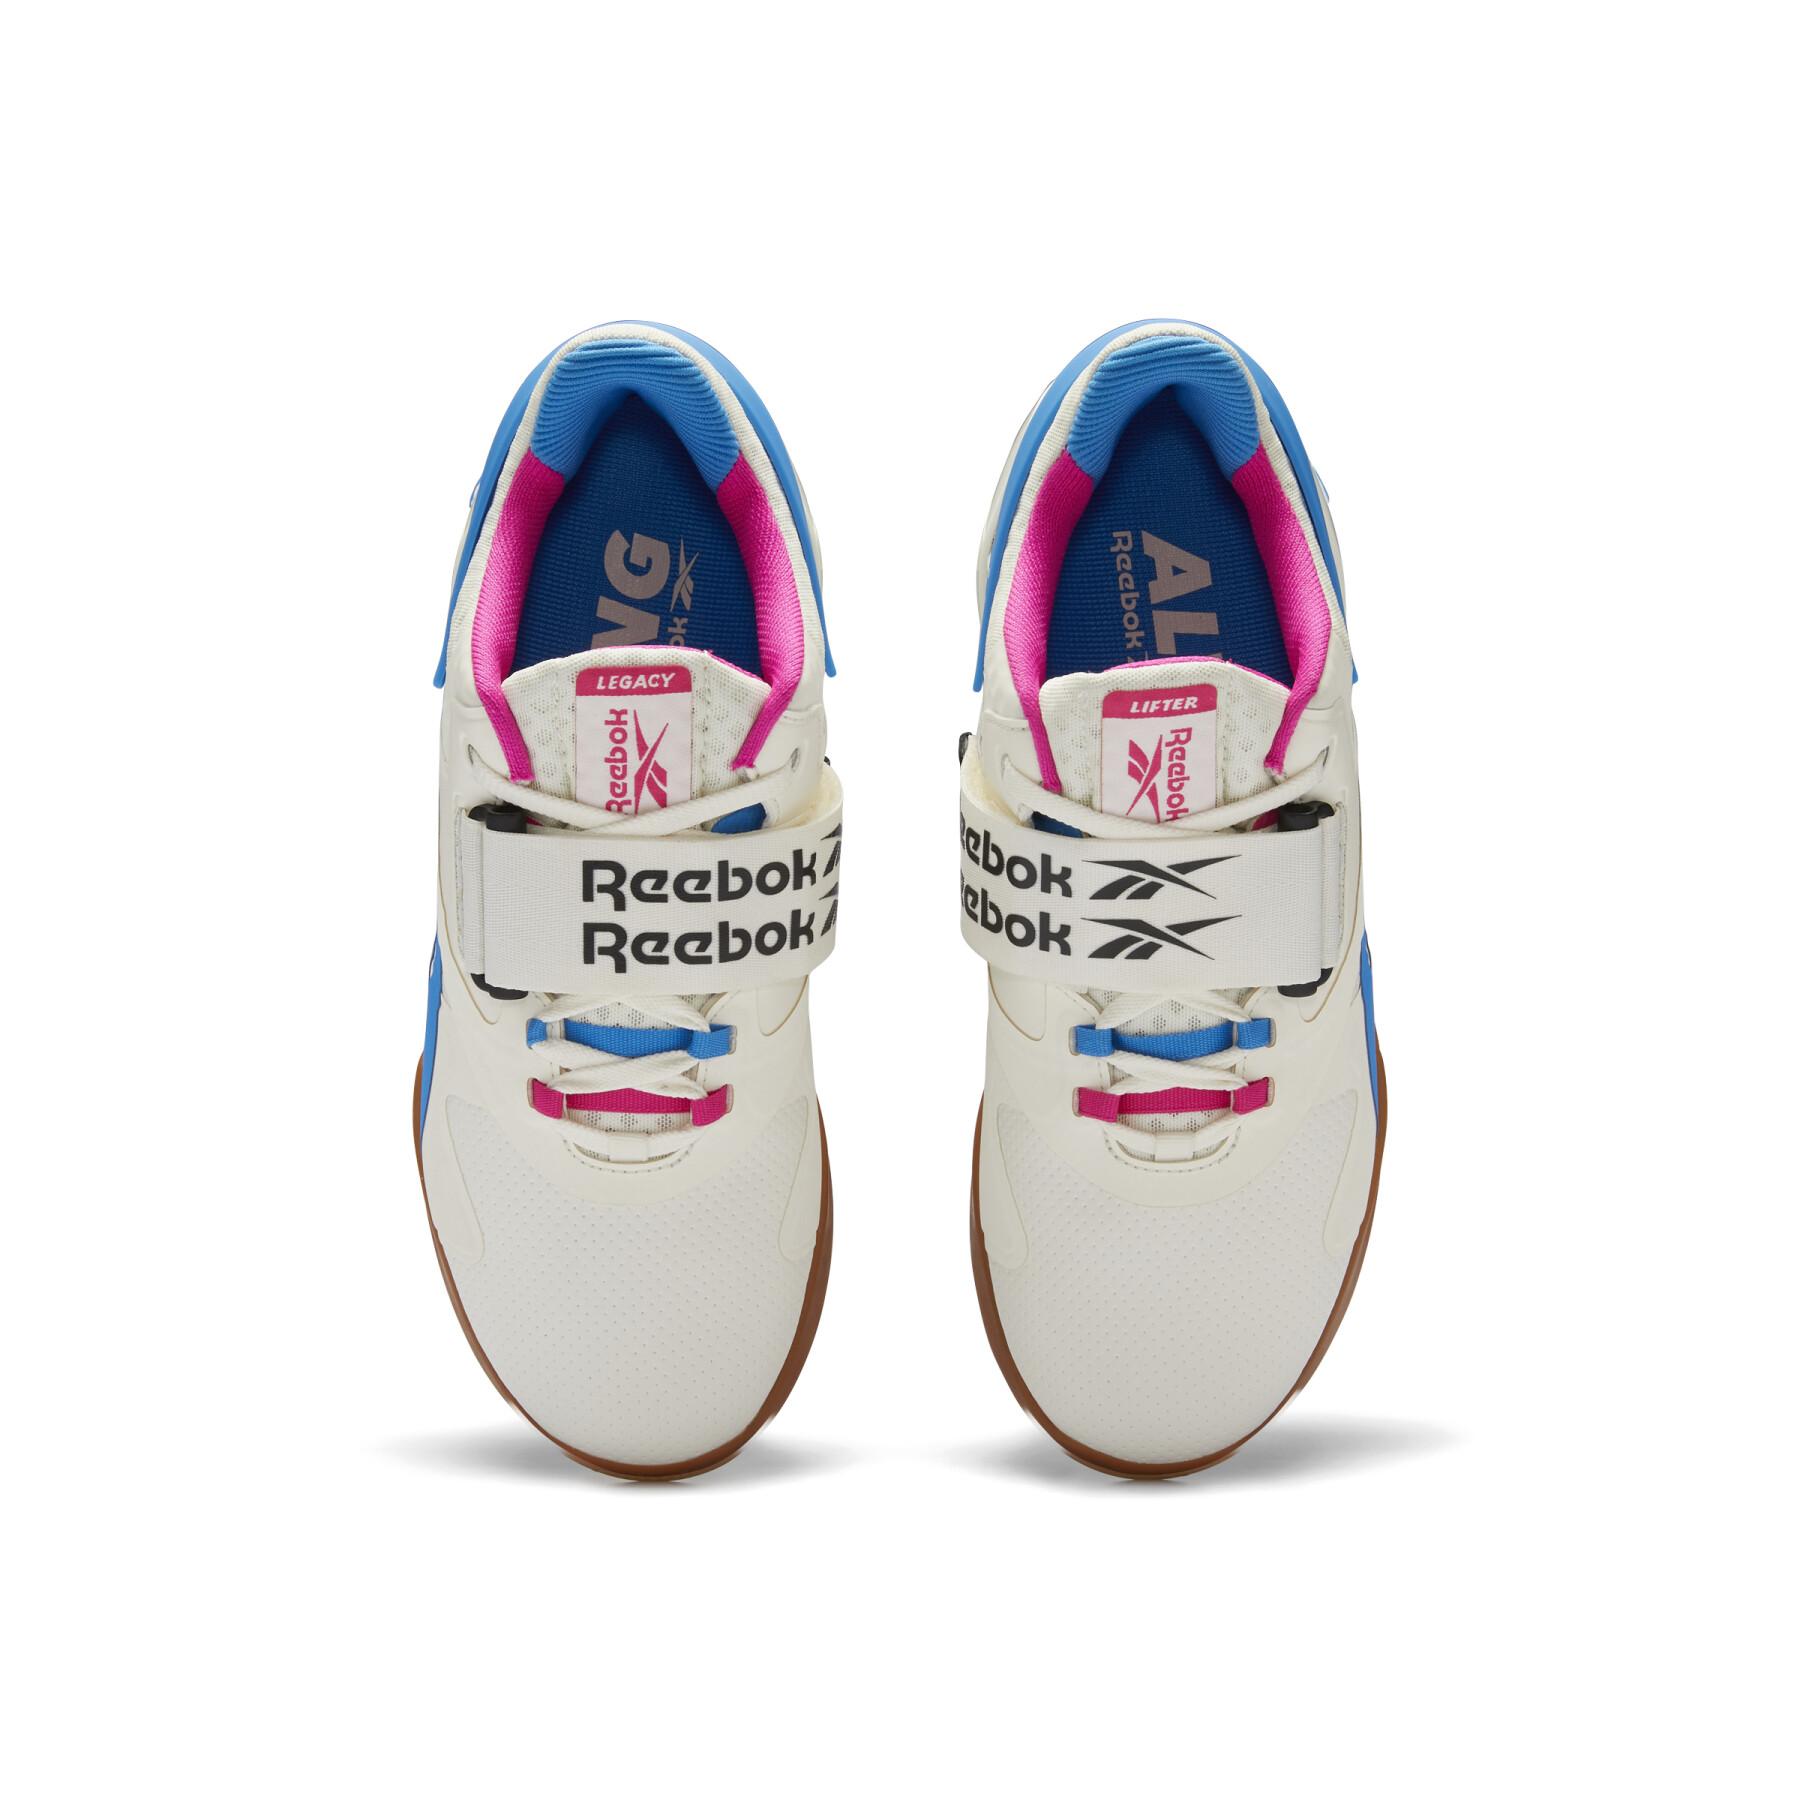 Women's shoes Reebok Legacy Lifter II